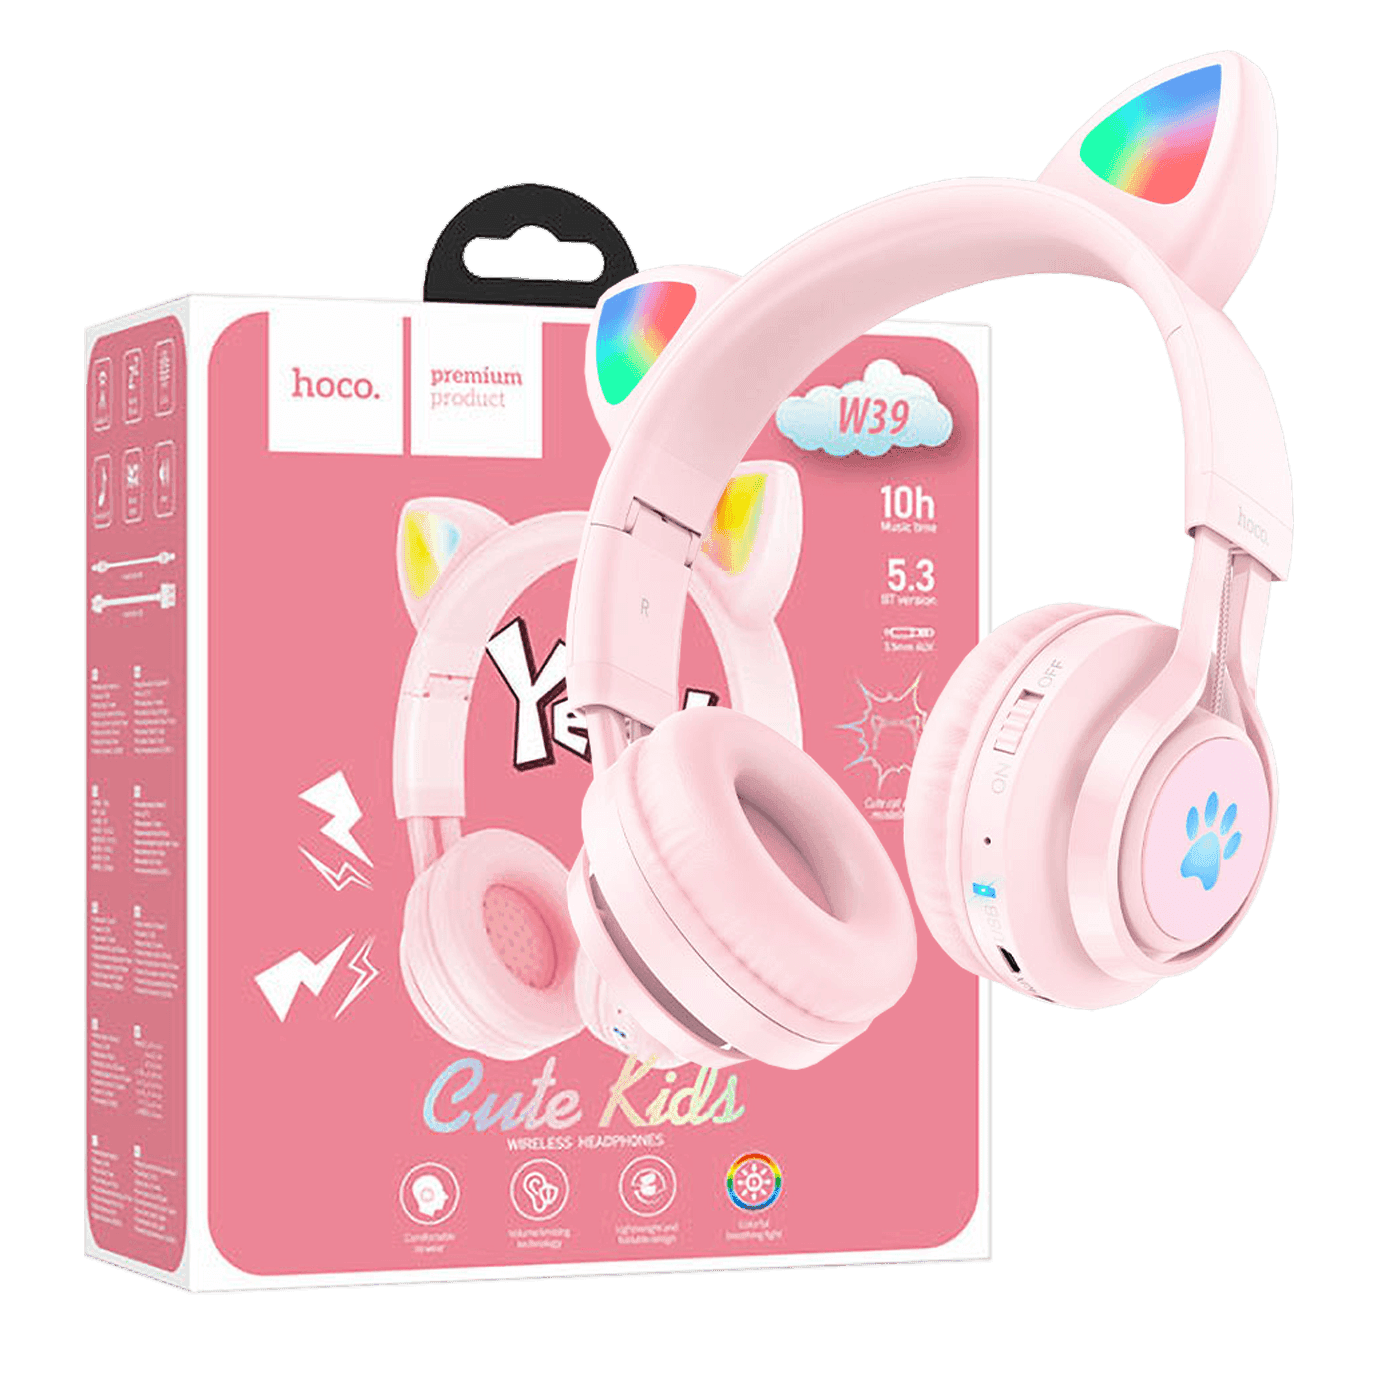 HOCO W39 Dečije slušalice Mačje uši, Stereo, Bluetooth v5.3 povezivanje, 400mAh, Roze